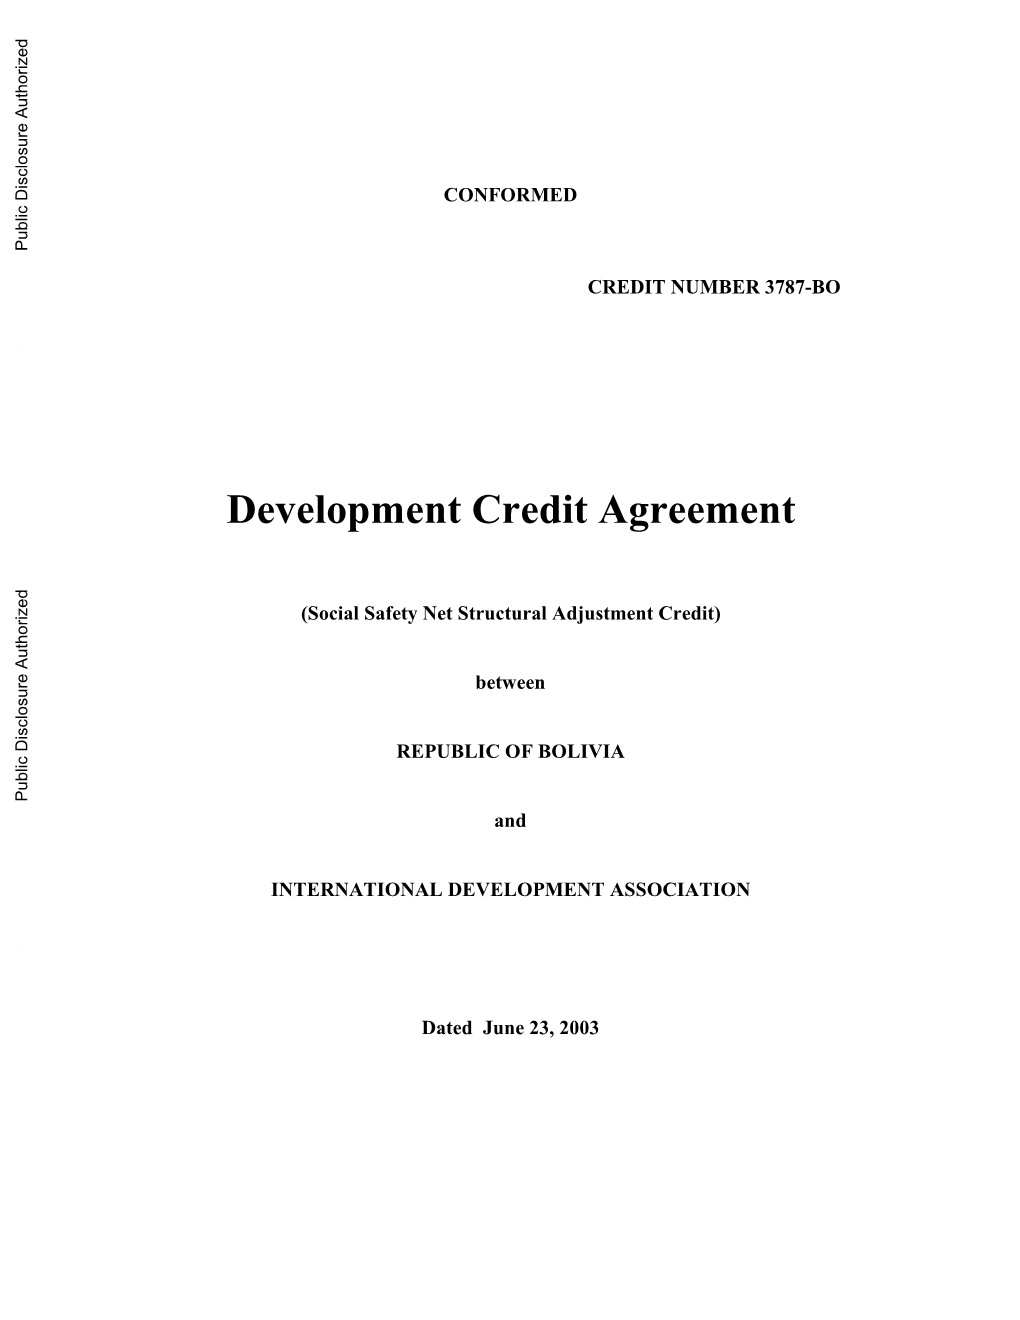 Development Credit Agreement Public Disclosure Authorized